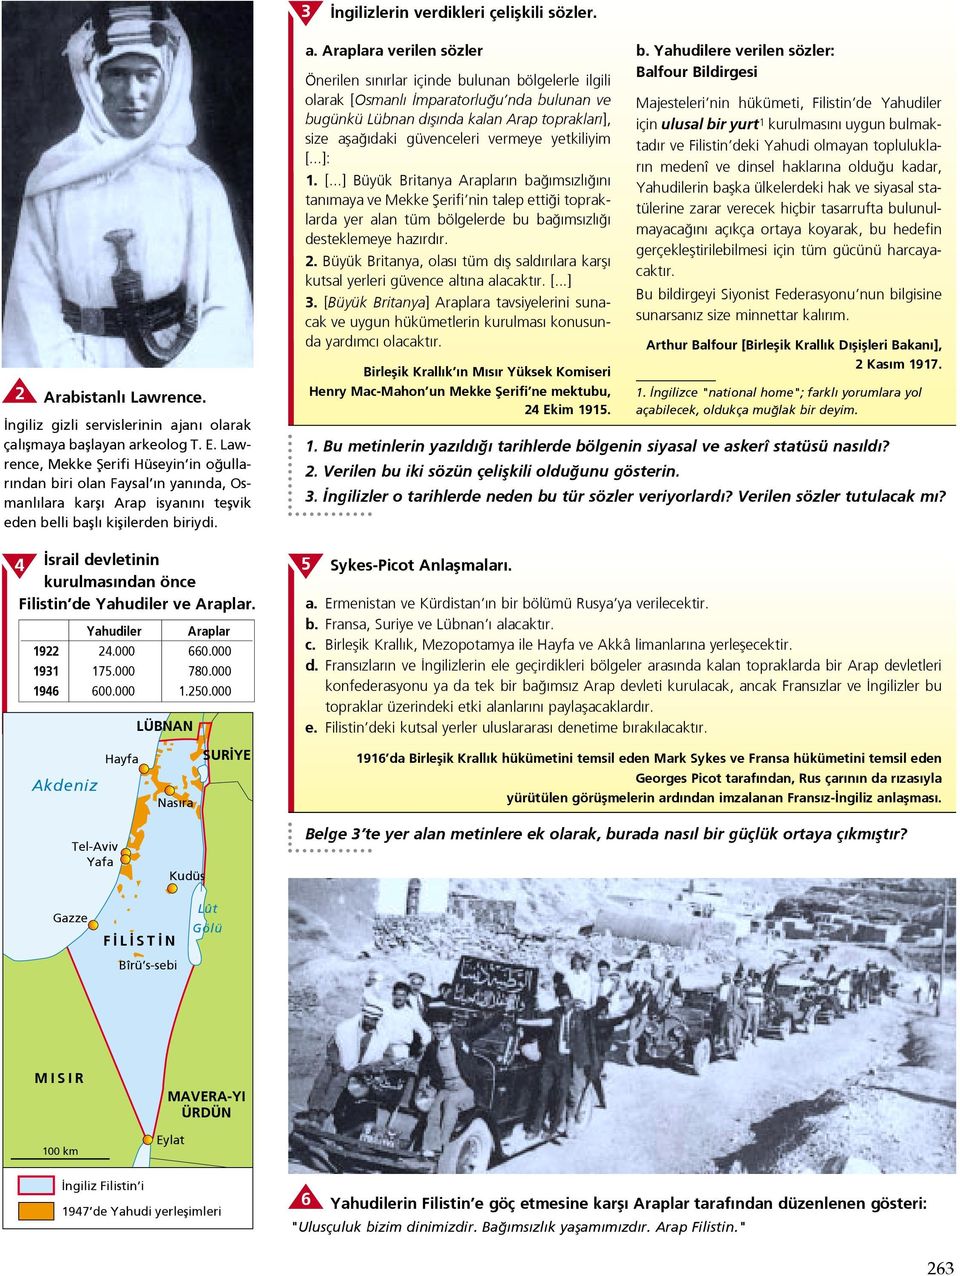 4 srail devletinin kurulmas ndan önce Filistin de Yahudiler ve Araplar. Yahudiler Araplar 1922 24.000 660.000 1931 175.000 780.000 1946 600.000 1.250.000 LÜBNAN a.